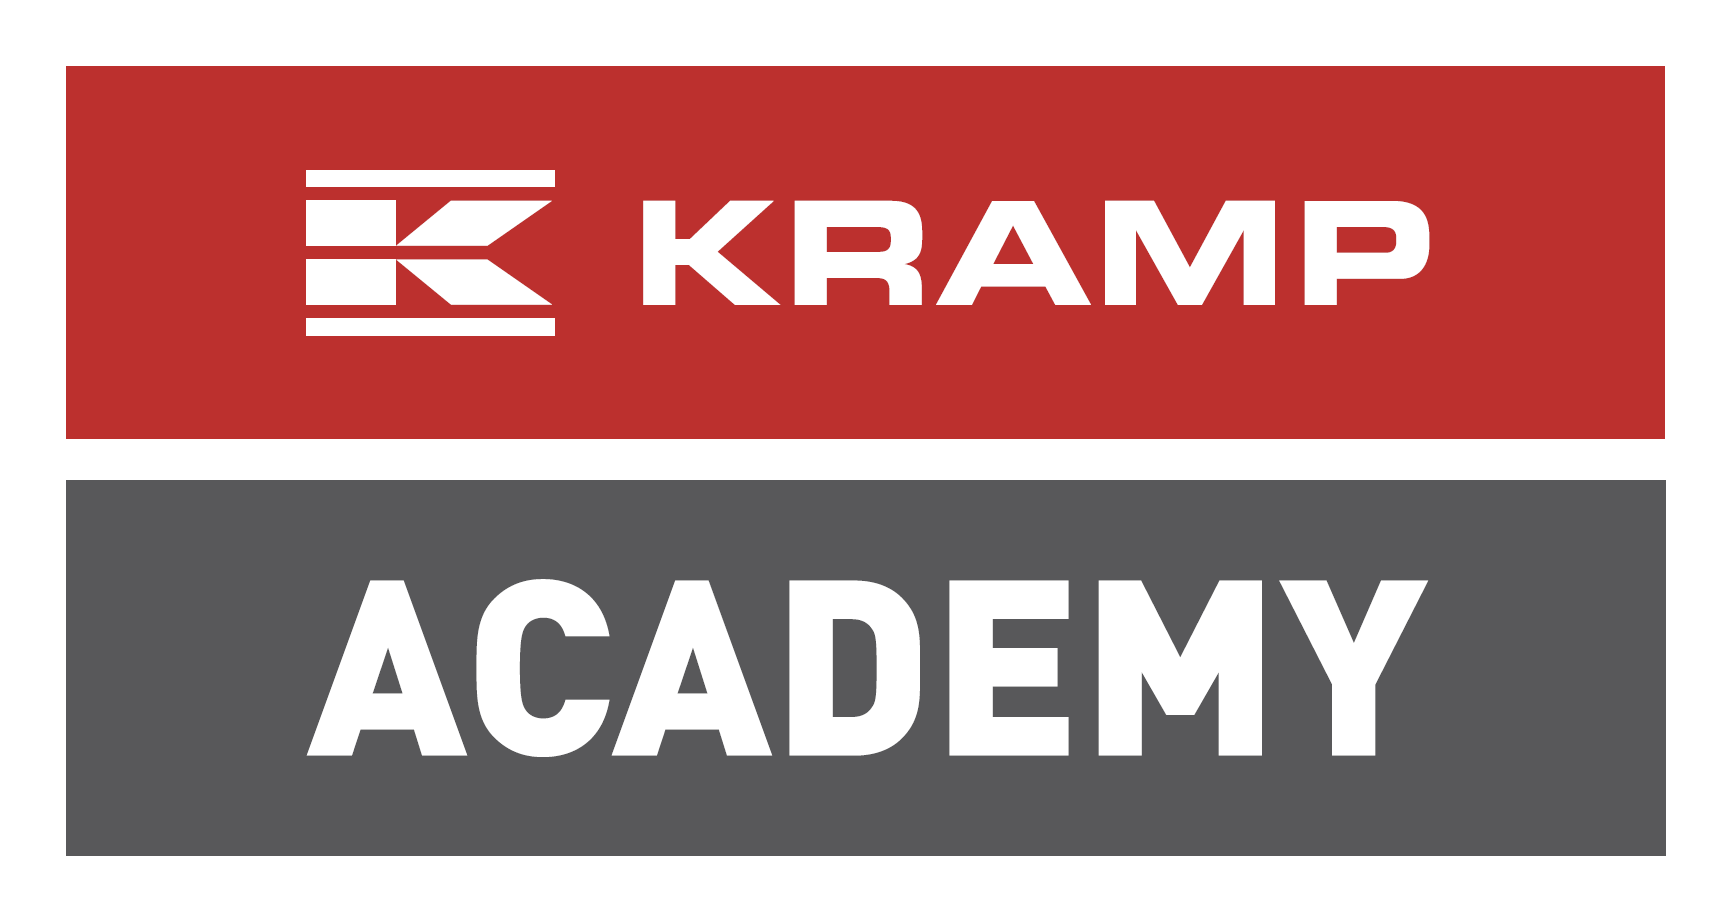 Kramp_Academy_Logo 4c RGB.png